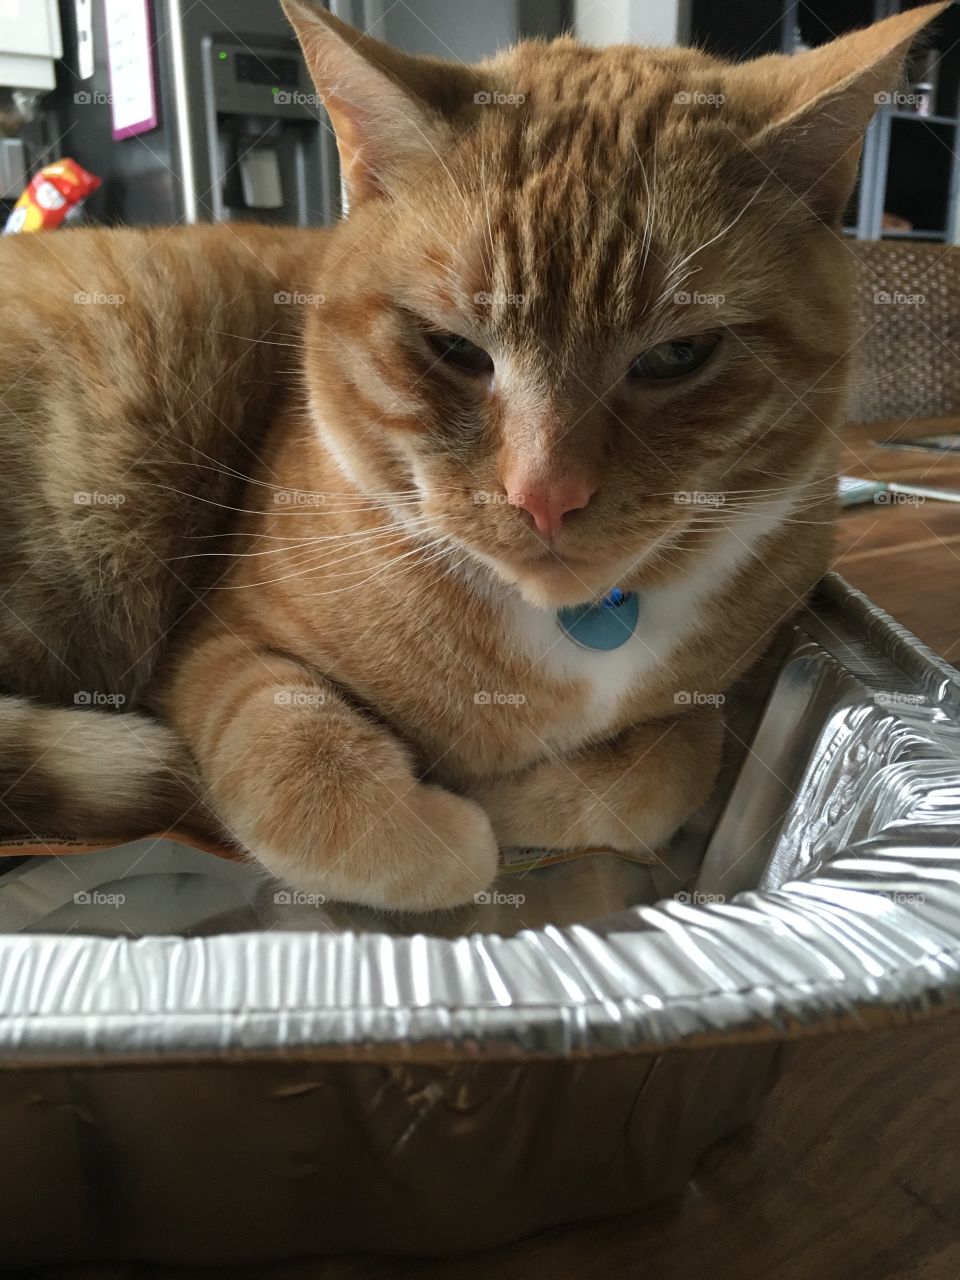 Cat in a pan 